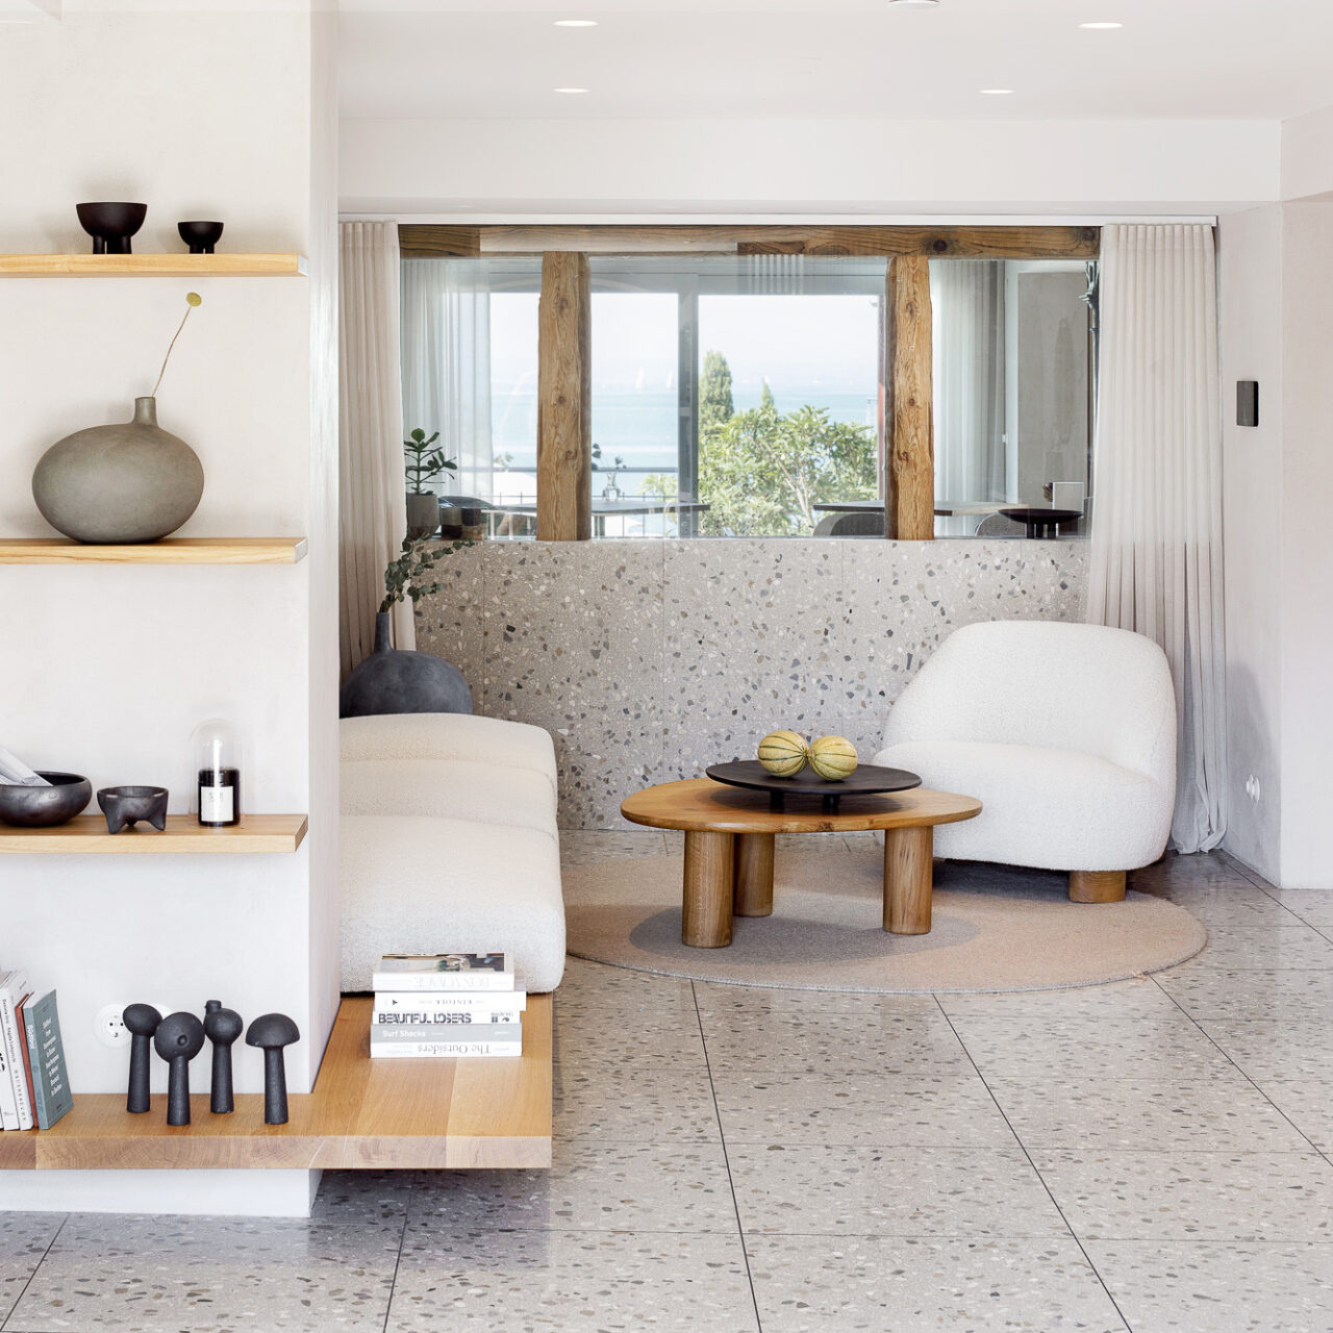 Total stylisch eingerichtetes Zimmer mit Terrazzo Boden